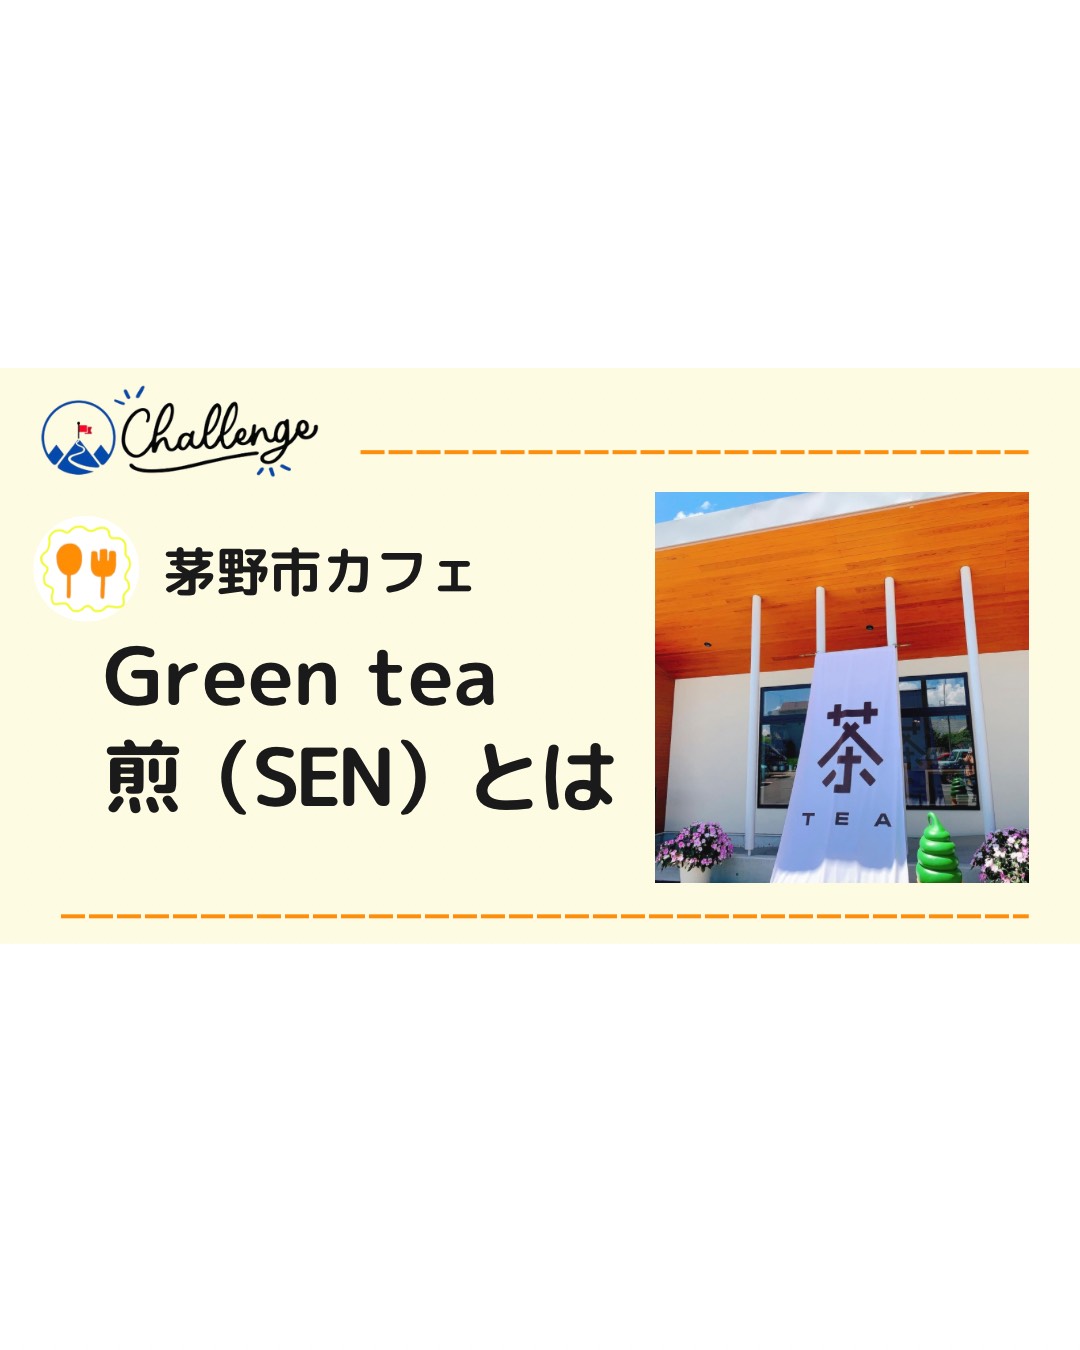 【茅野市カフェ】豊富な種類のお団子が食べられるGreen tea 煎（SEN）に行ってみた♪